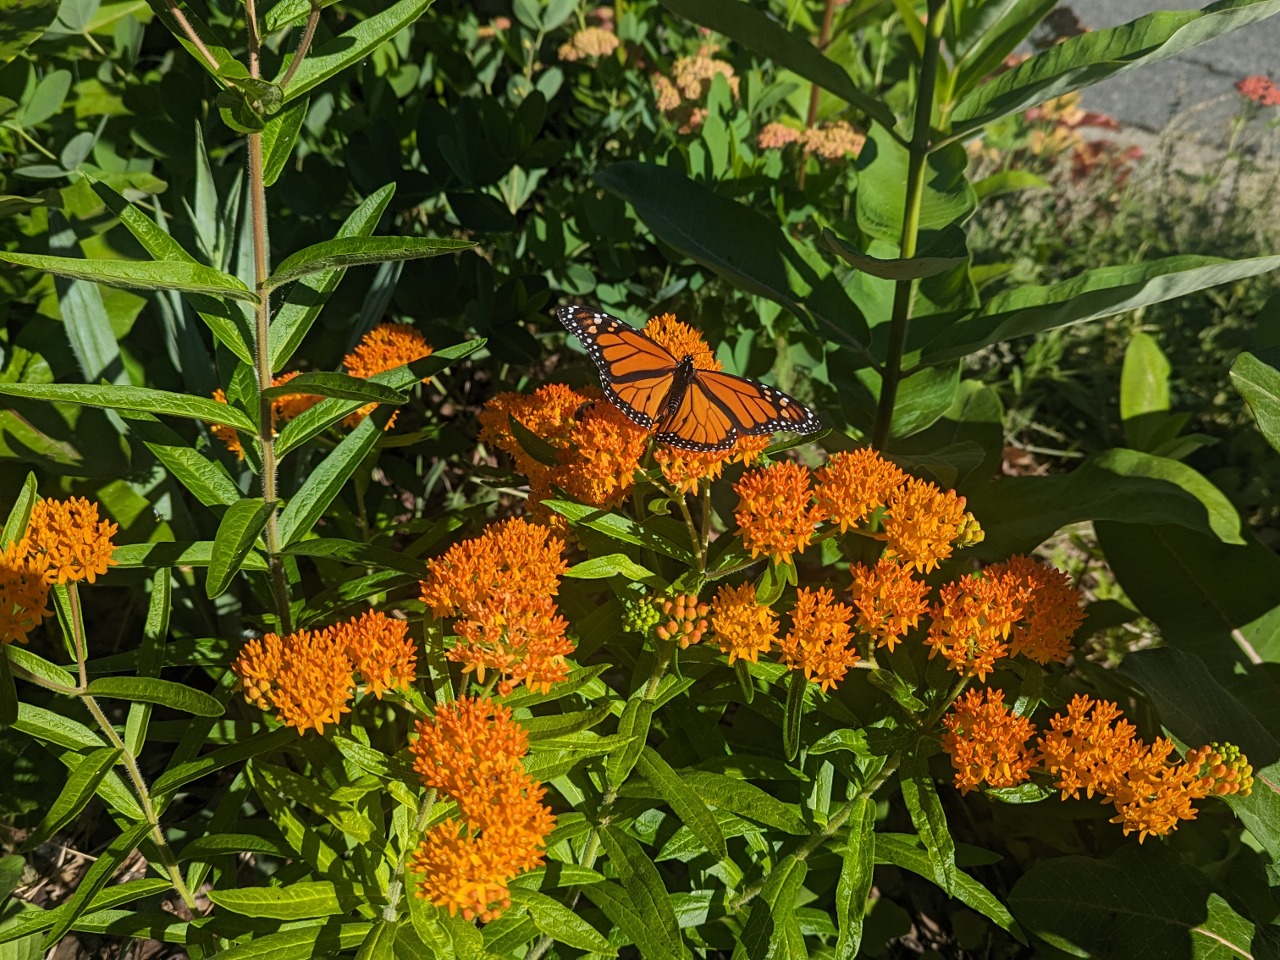 A male monarch on orange flowers